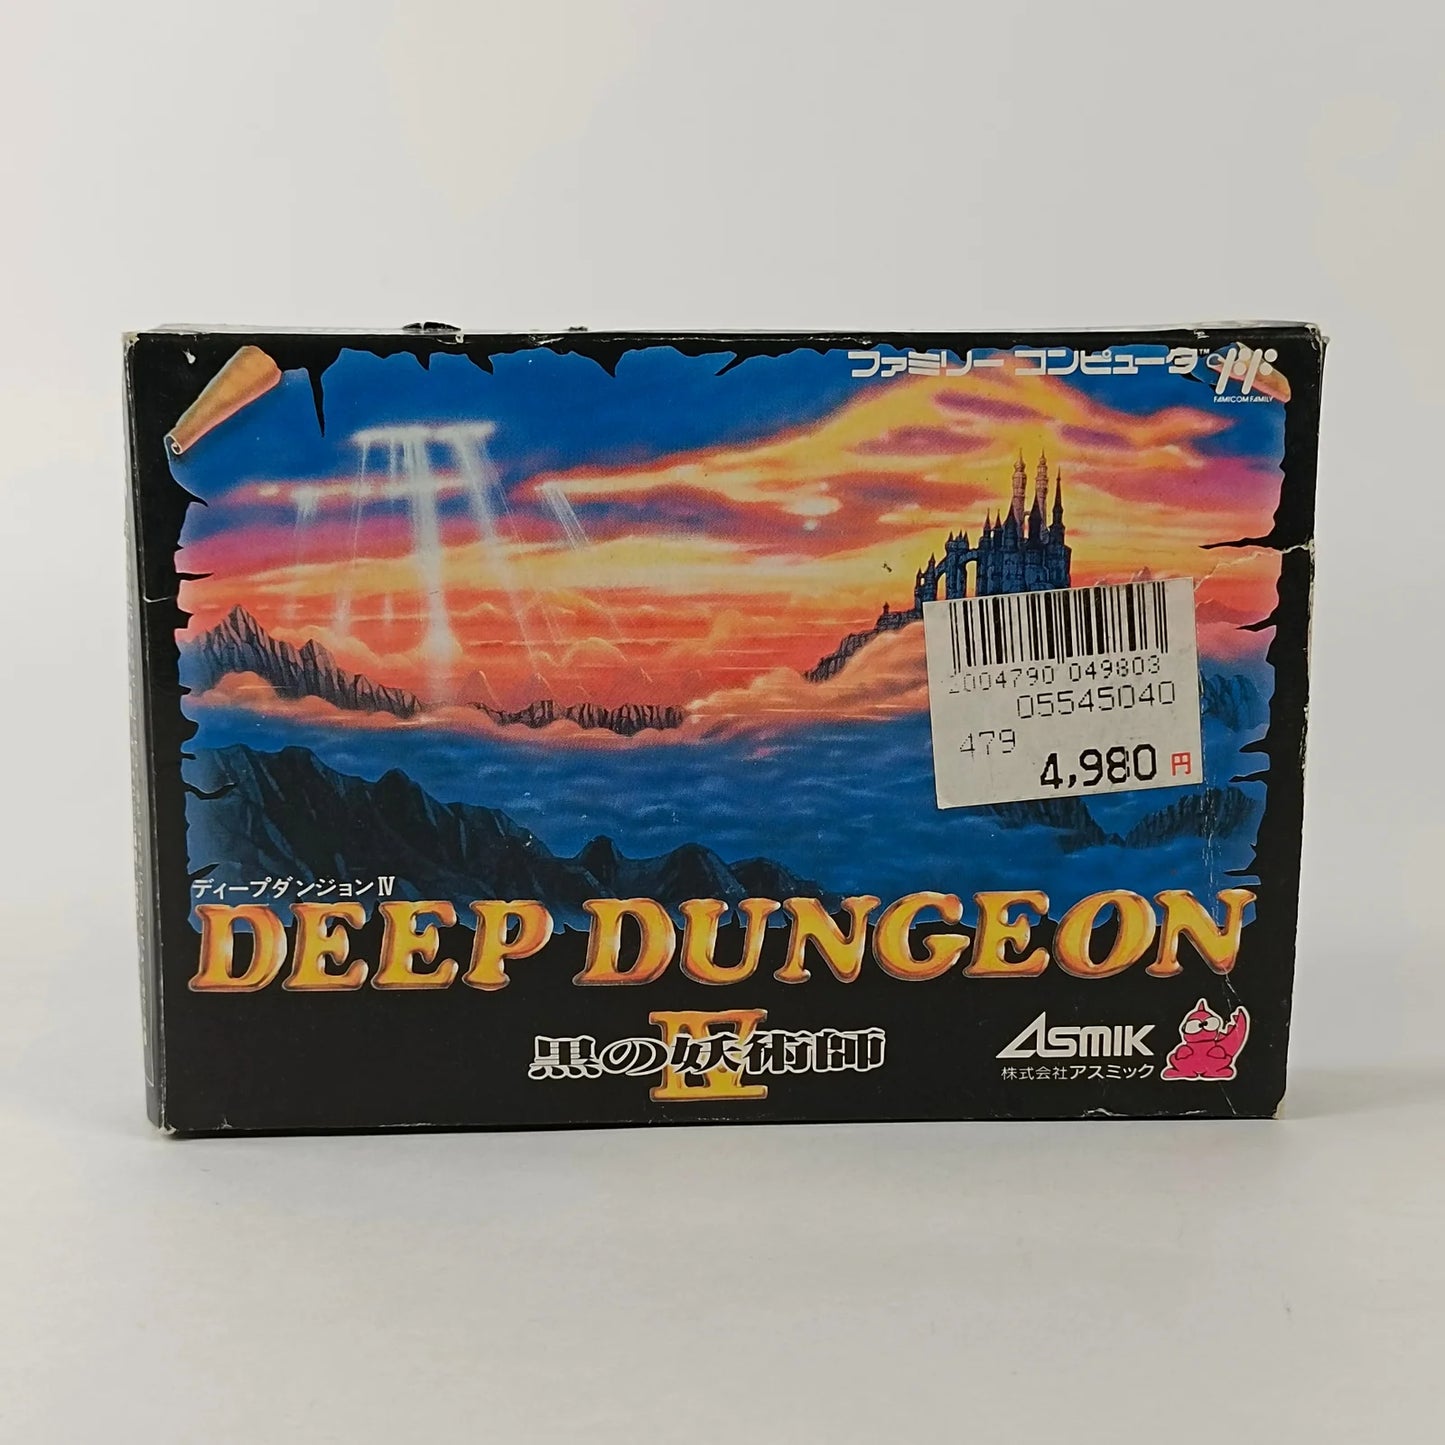 Deep Dungeon IV: The Black Sorcerer